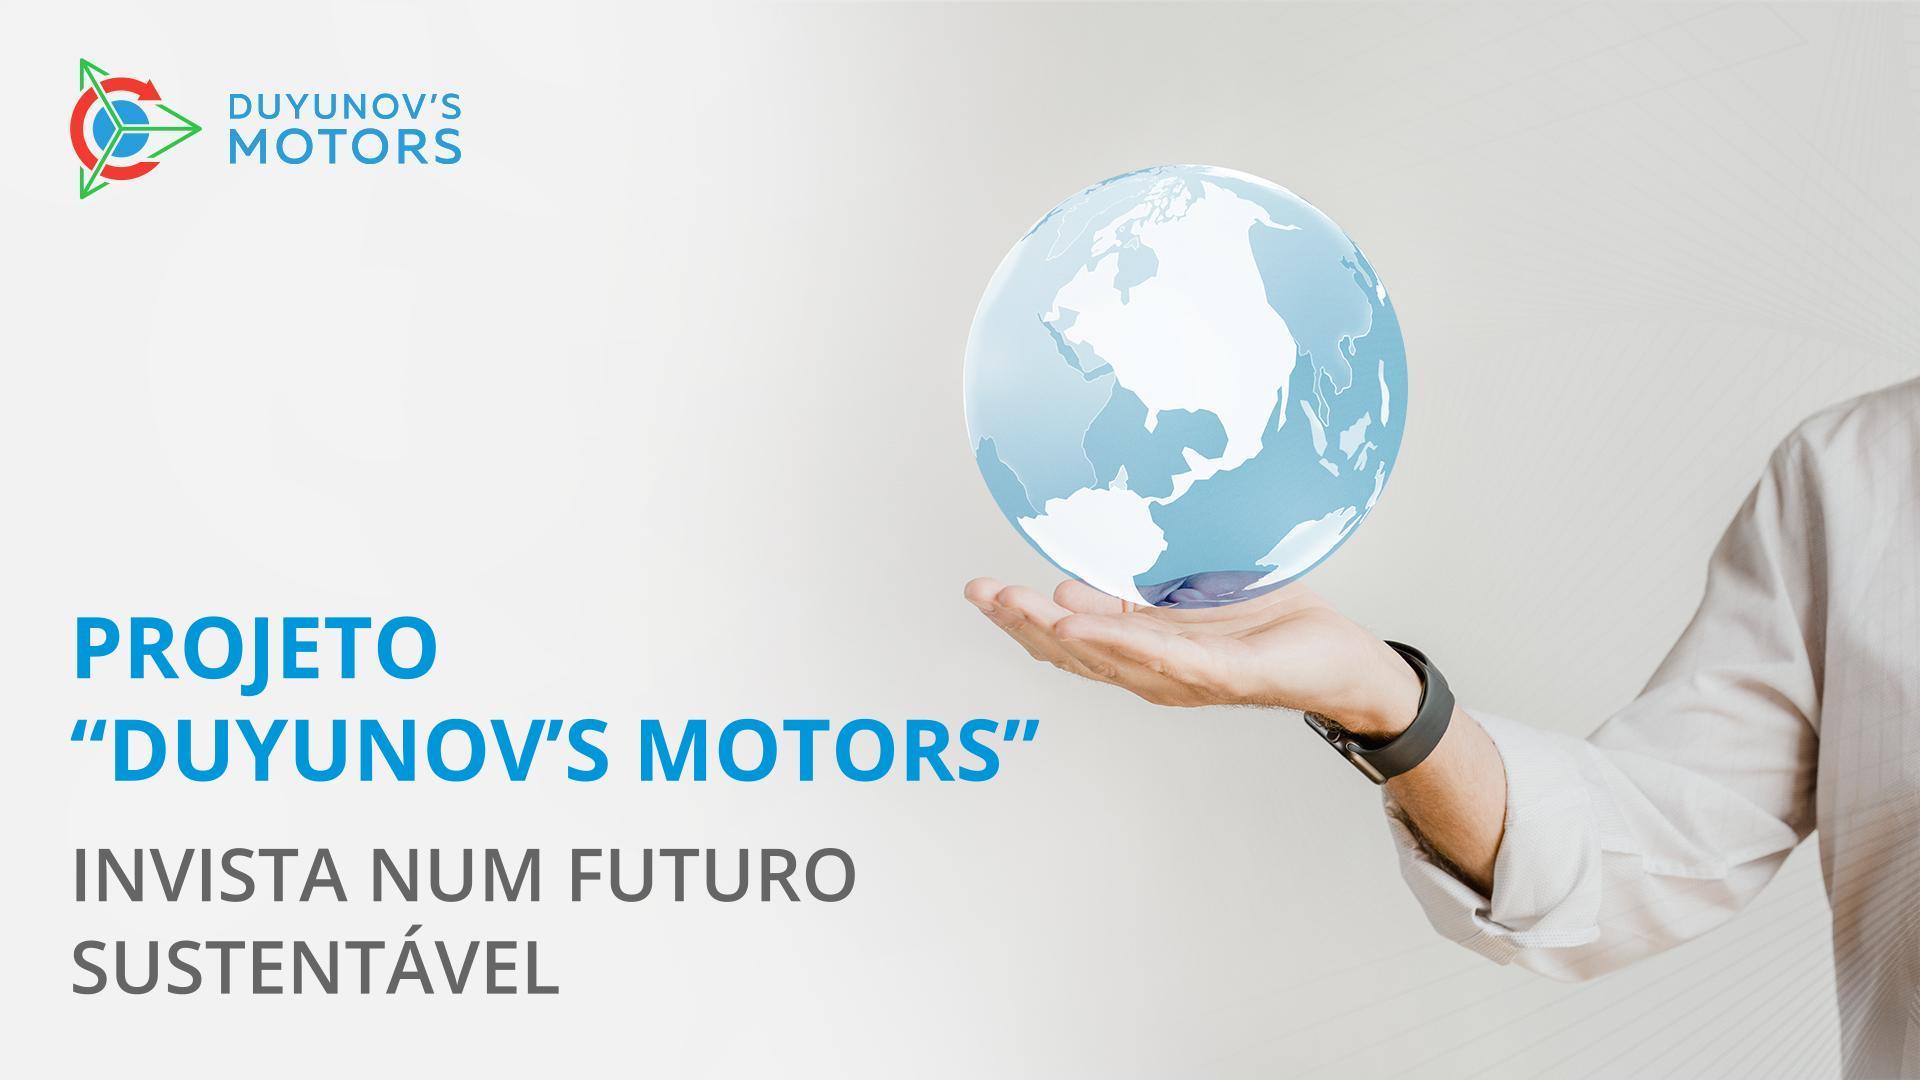 Projeto "Duyunov's motors": invista num futuro sustentável